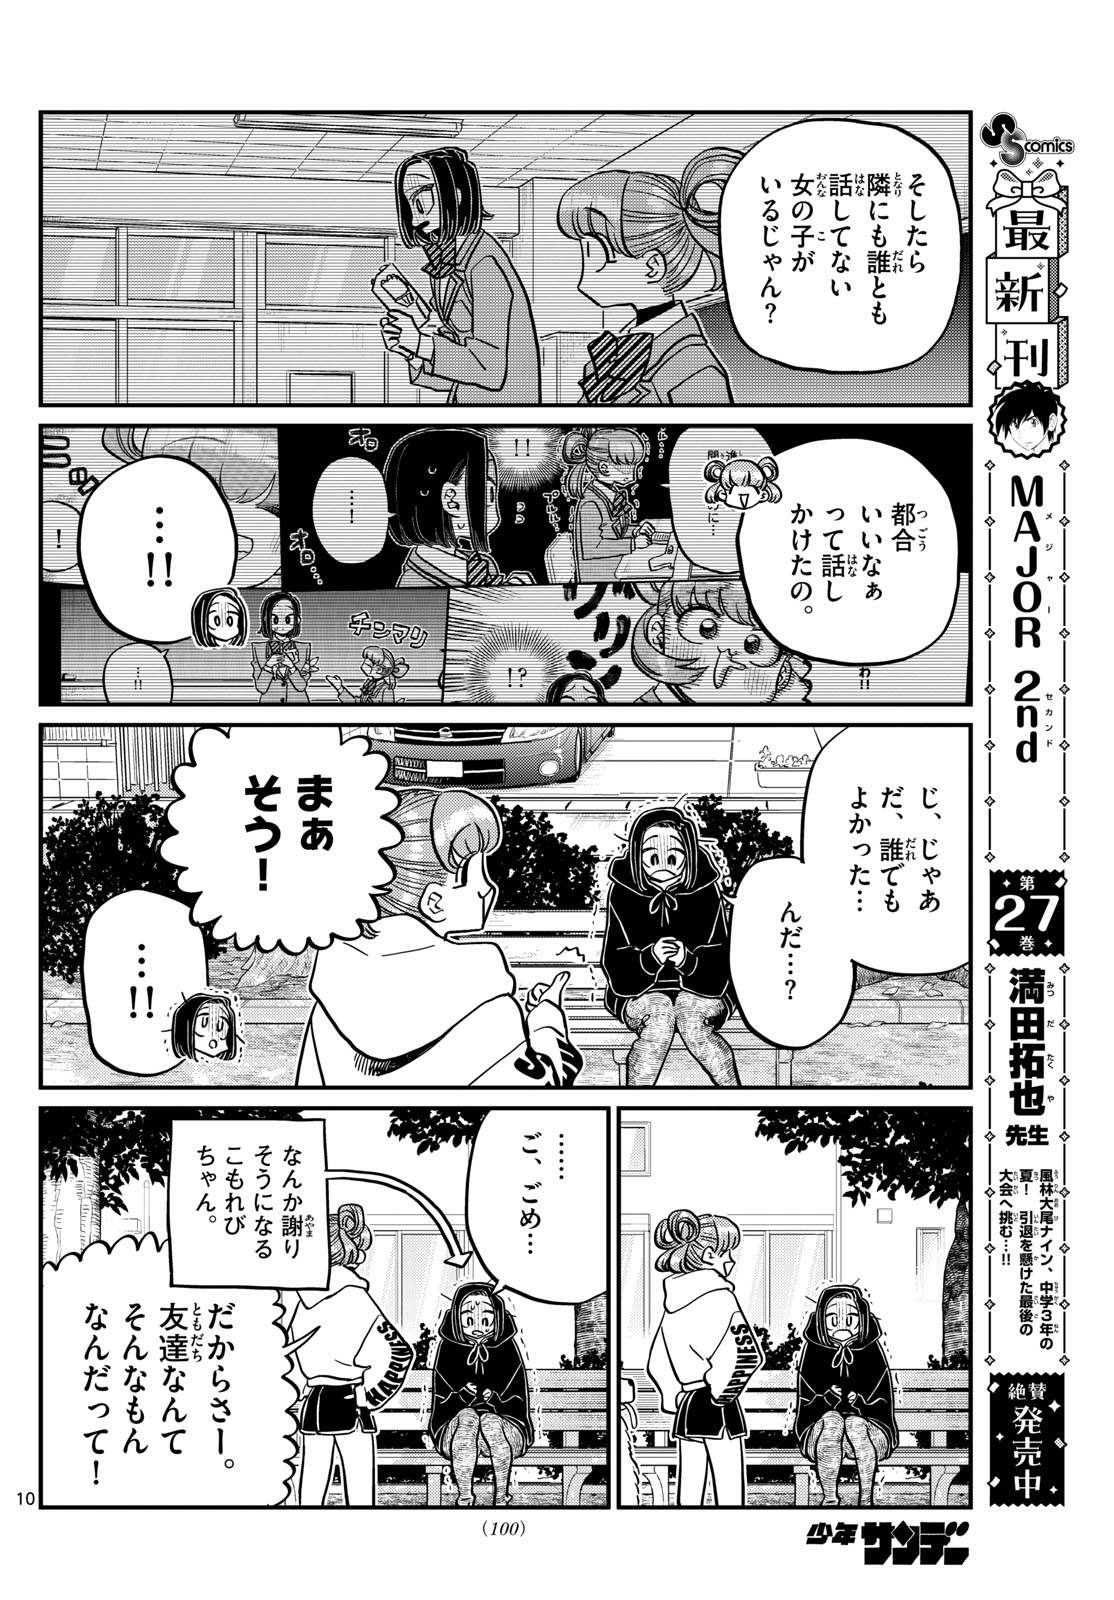 Komi-san wa Komyushou Desu - Chapter 435 - Page 10